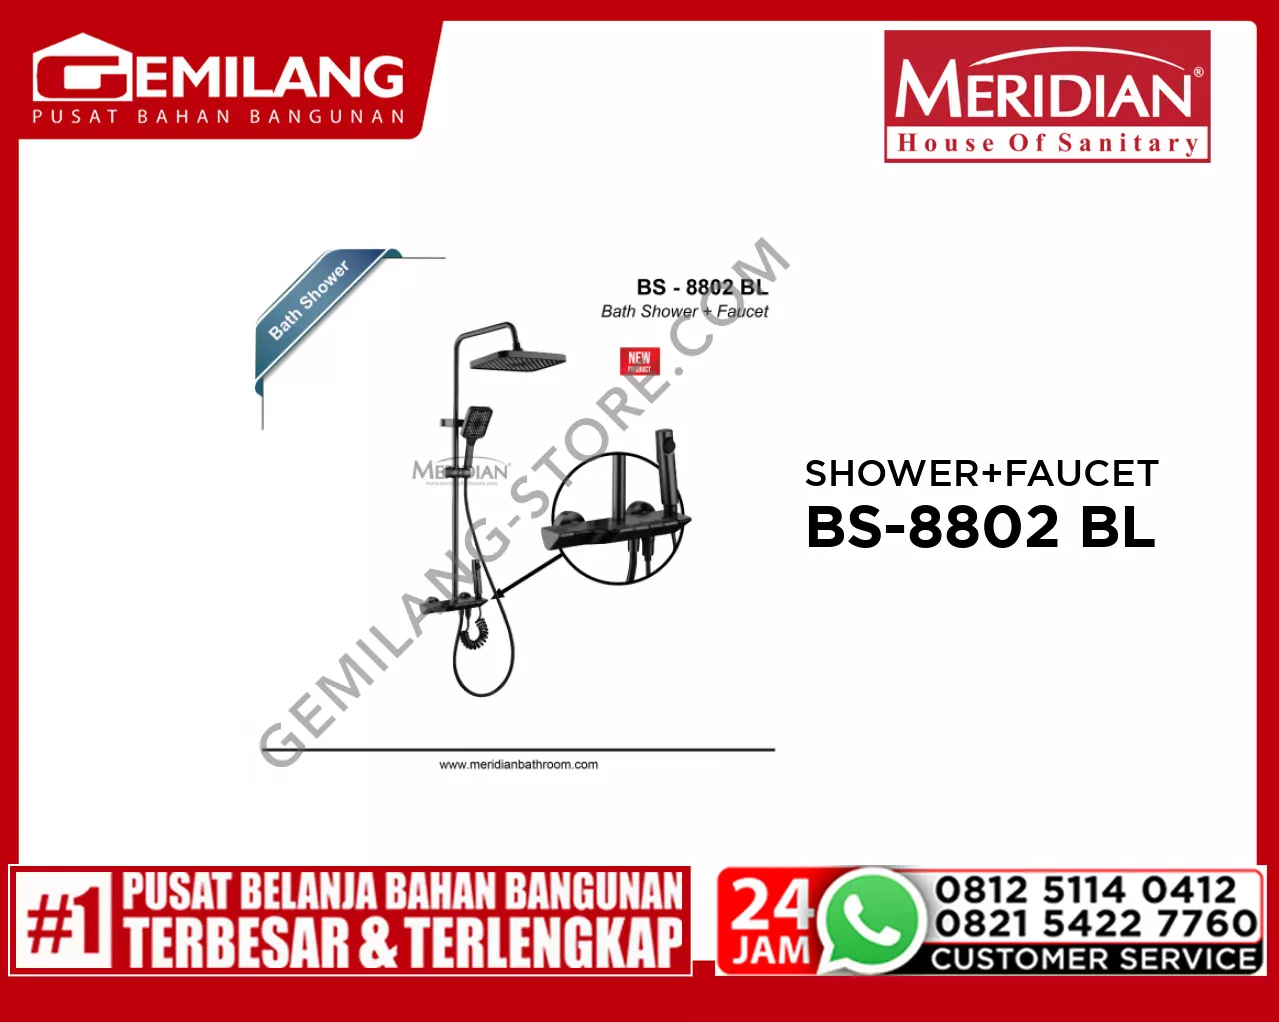 MERIDIAN BATH SHOWER + FAUCET BLACK BS-8802 BL